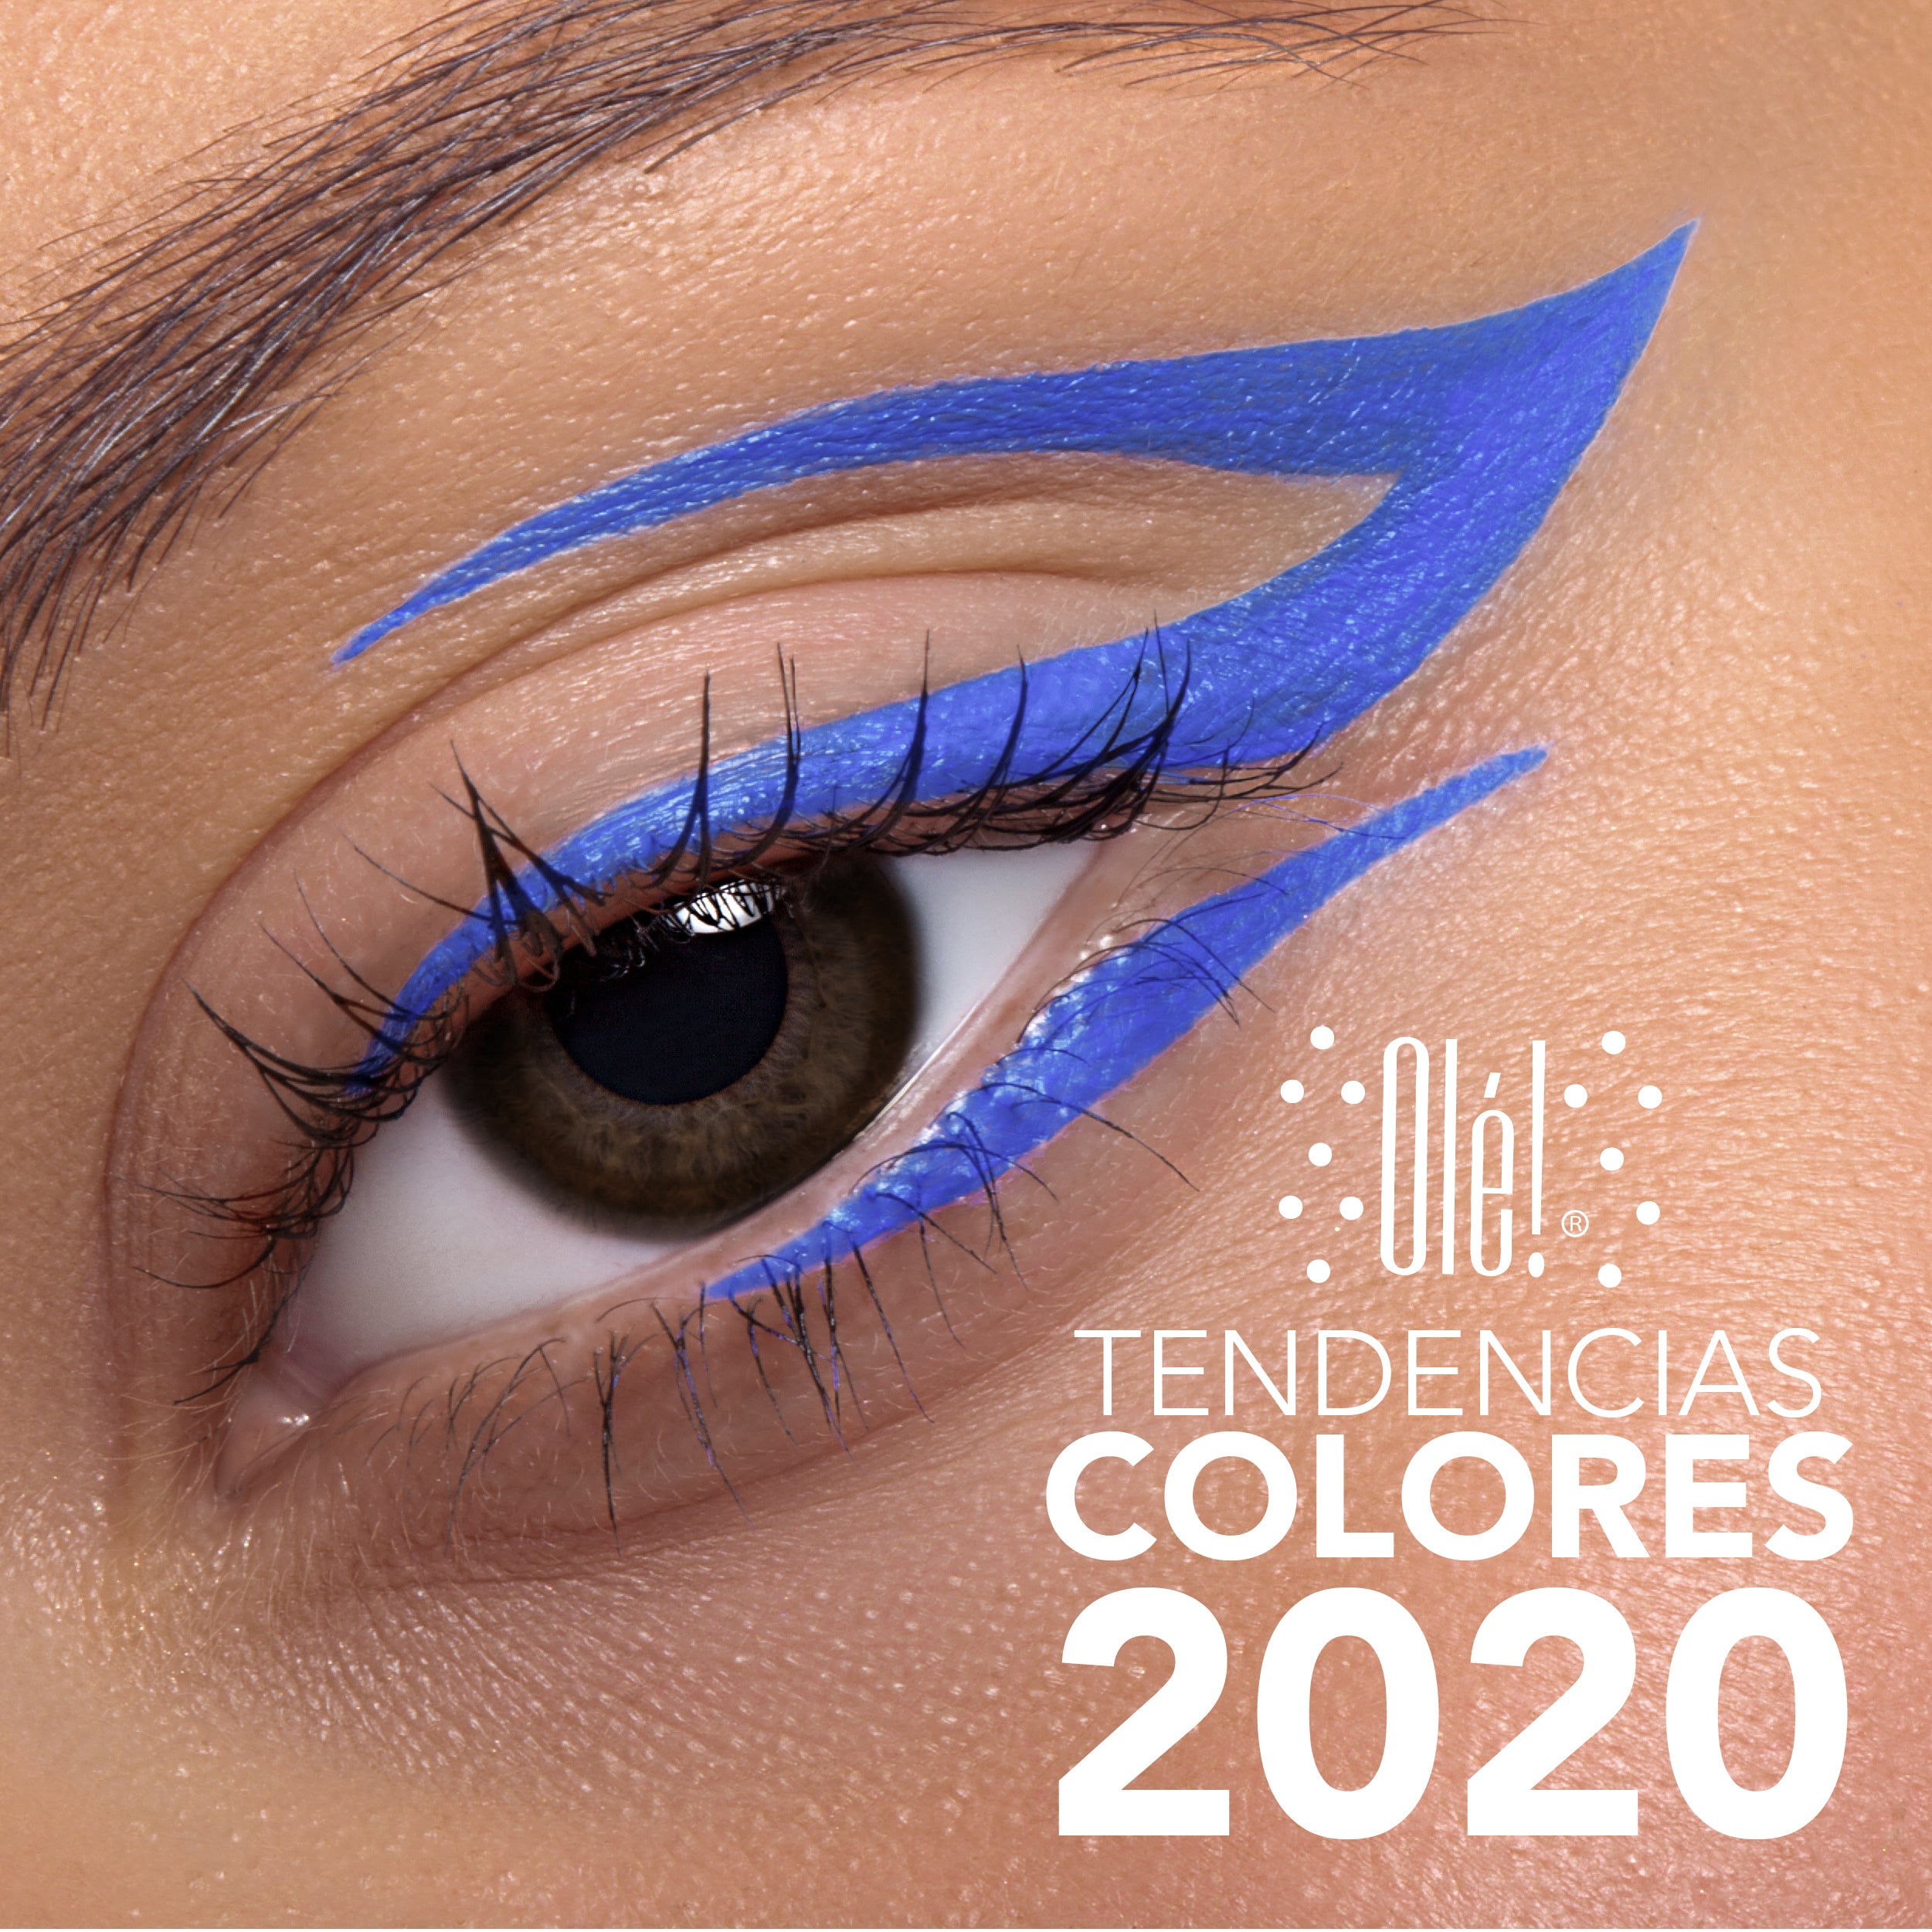 6 Tendencias en colores para este 2020 ¿Cuál será tu favorita?